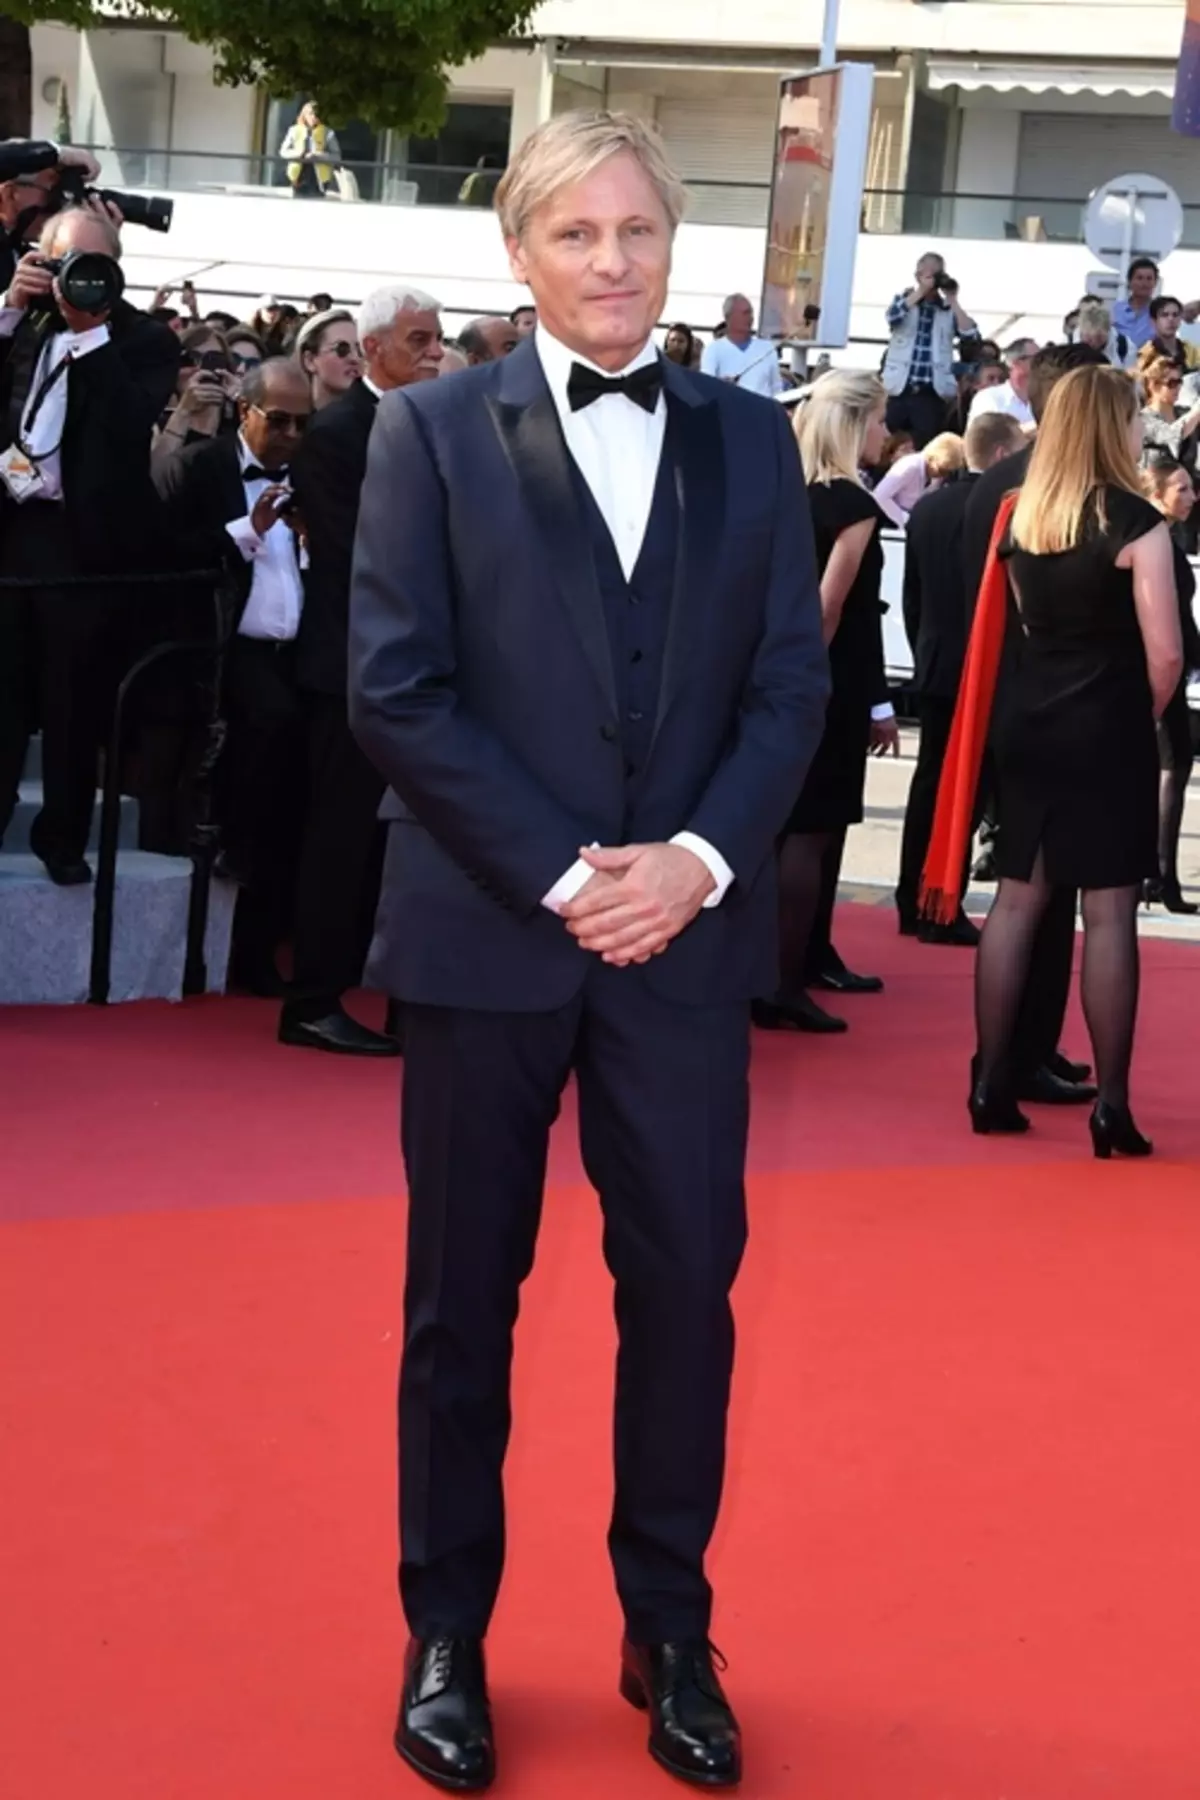 Foto: Viggo Mortensen, Vensean Kassel, Catherine Denev și alte stele la ceremonia de închidere a Festivalului Cannes 2019 41459_7